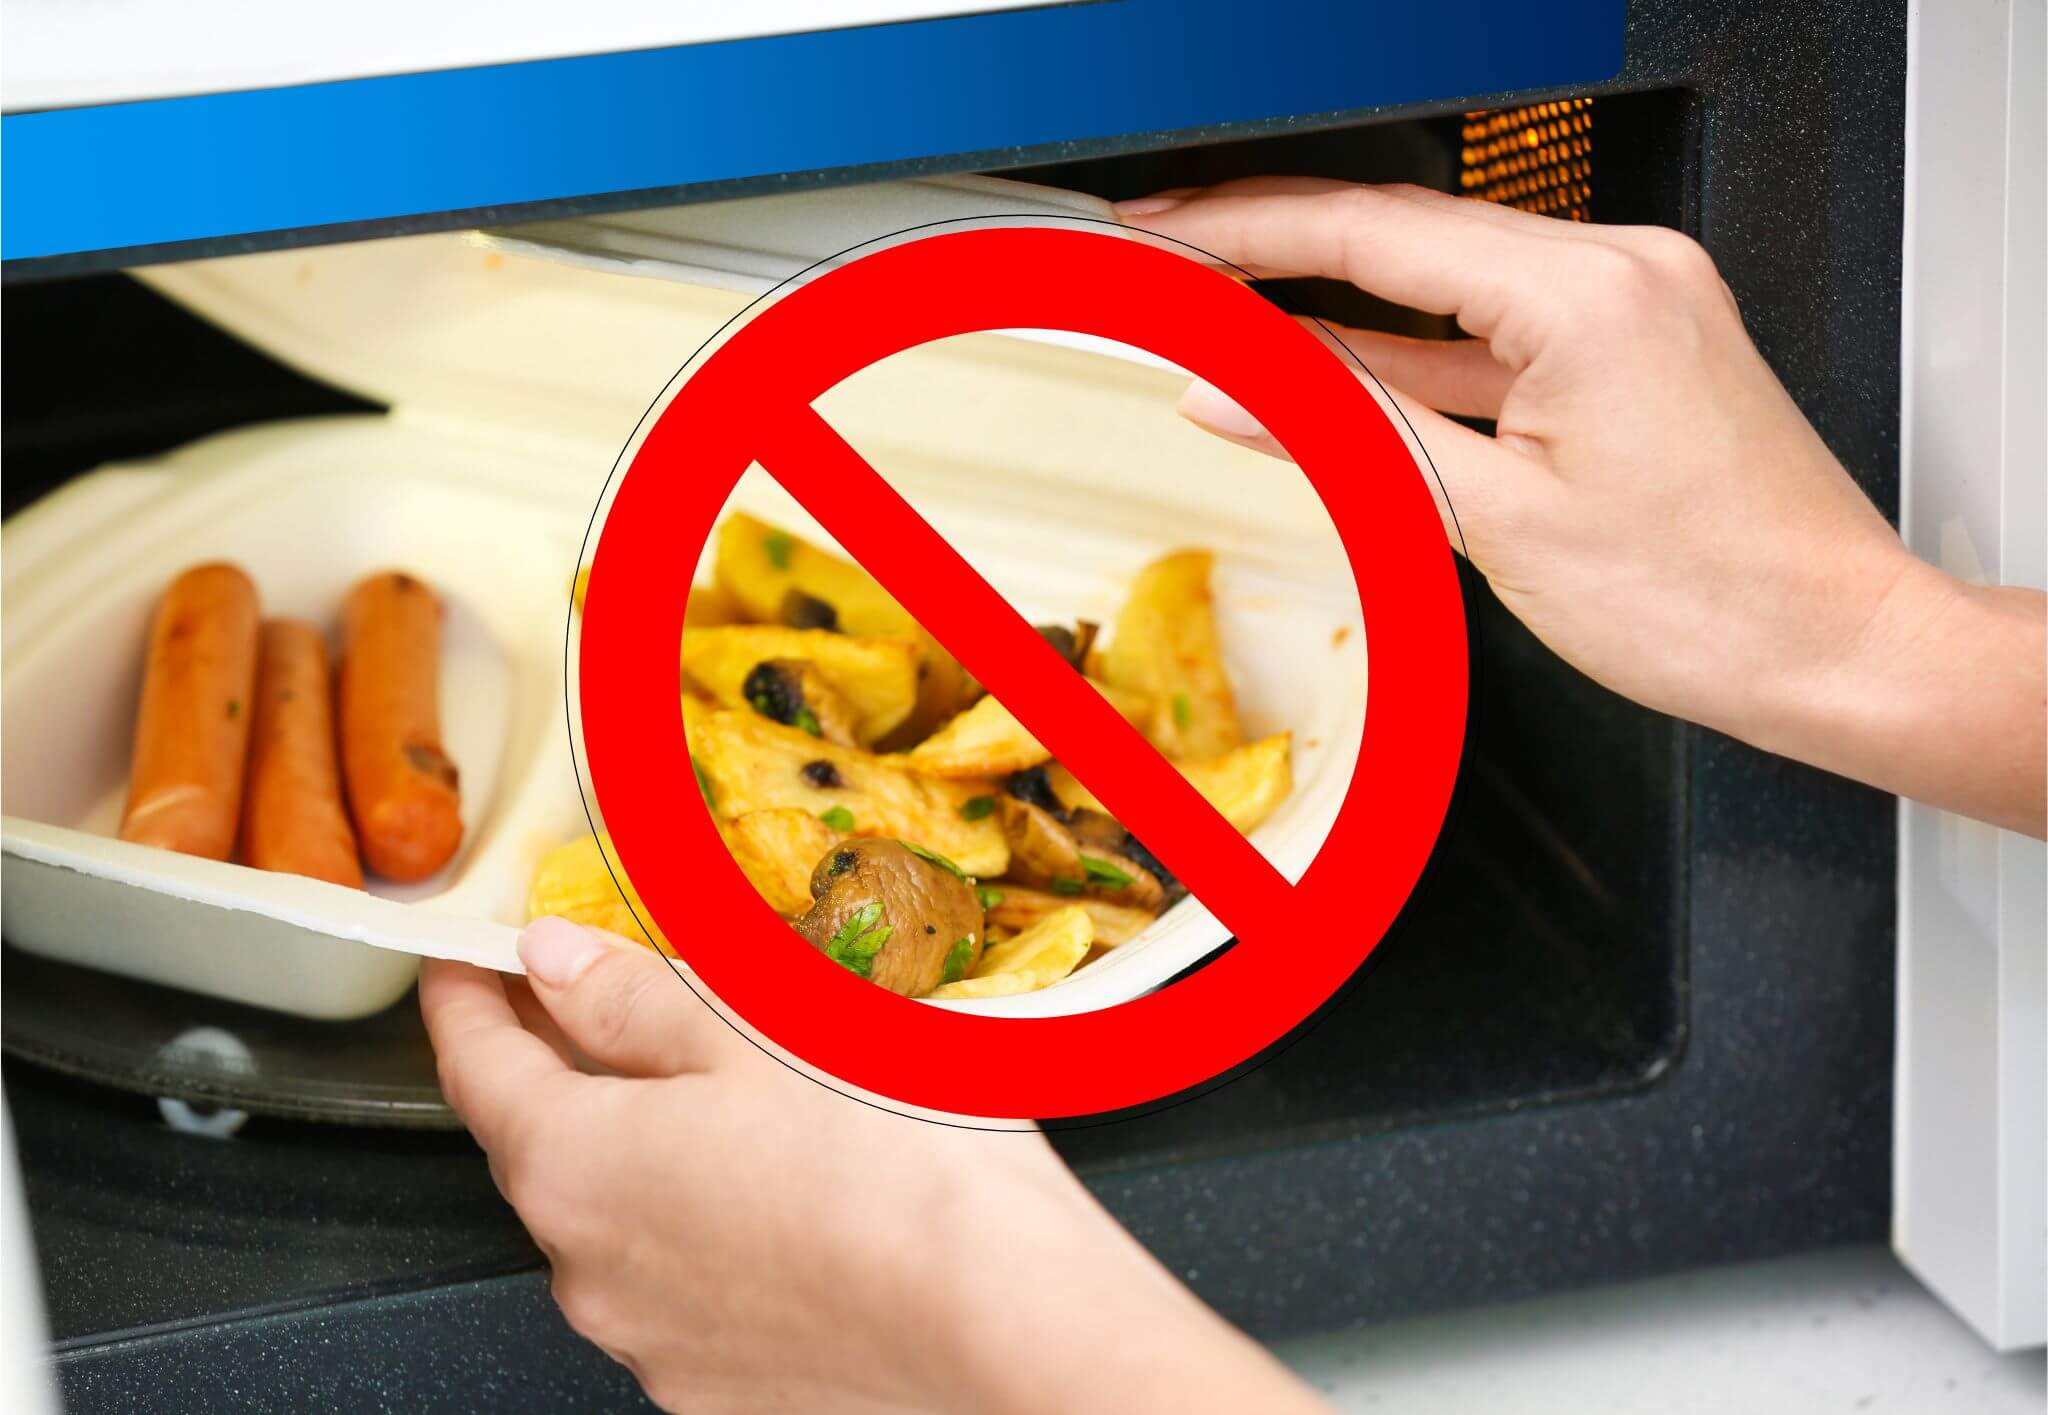 Es peligroso calentar alimentos en el microondas? La respuesta